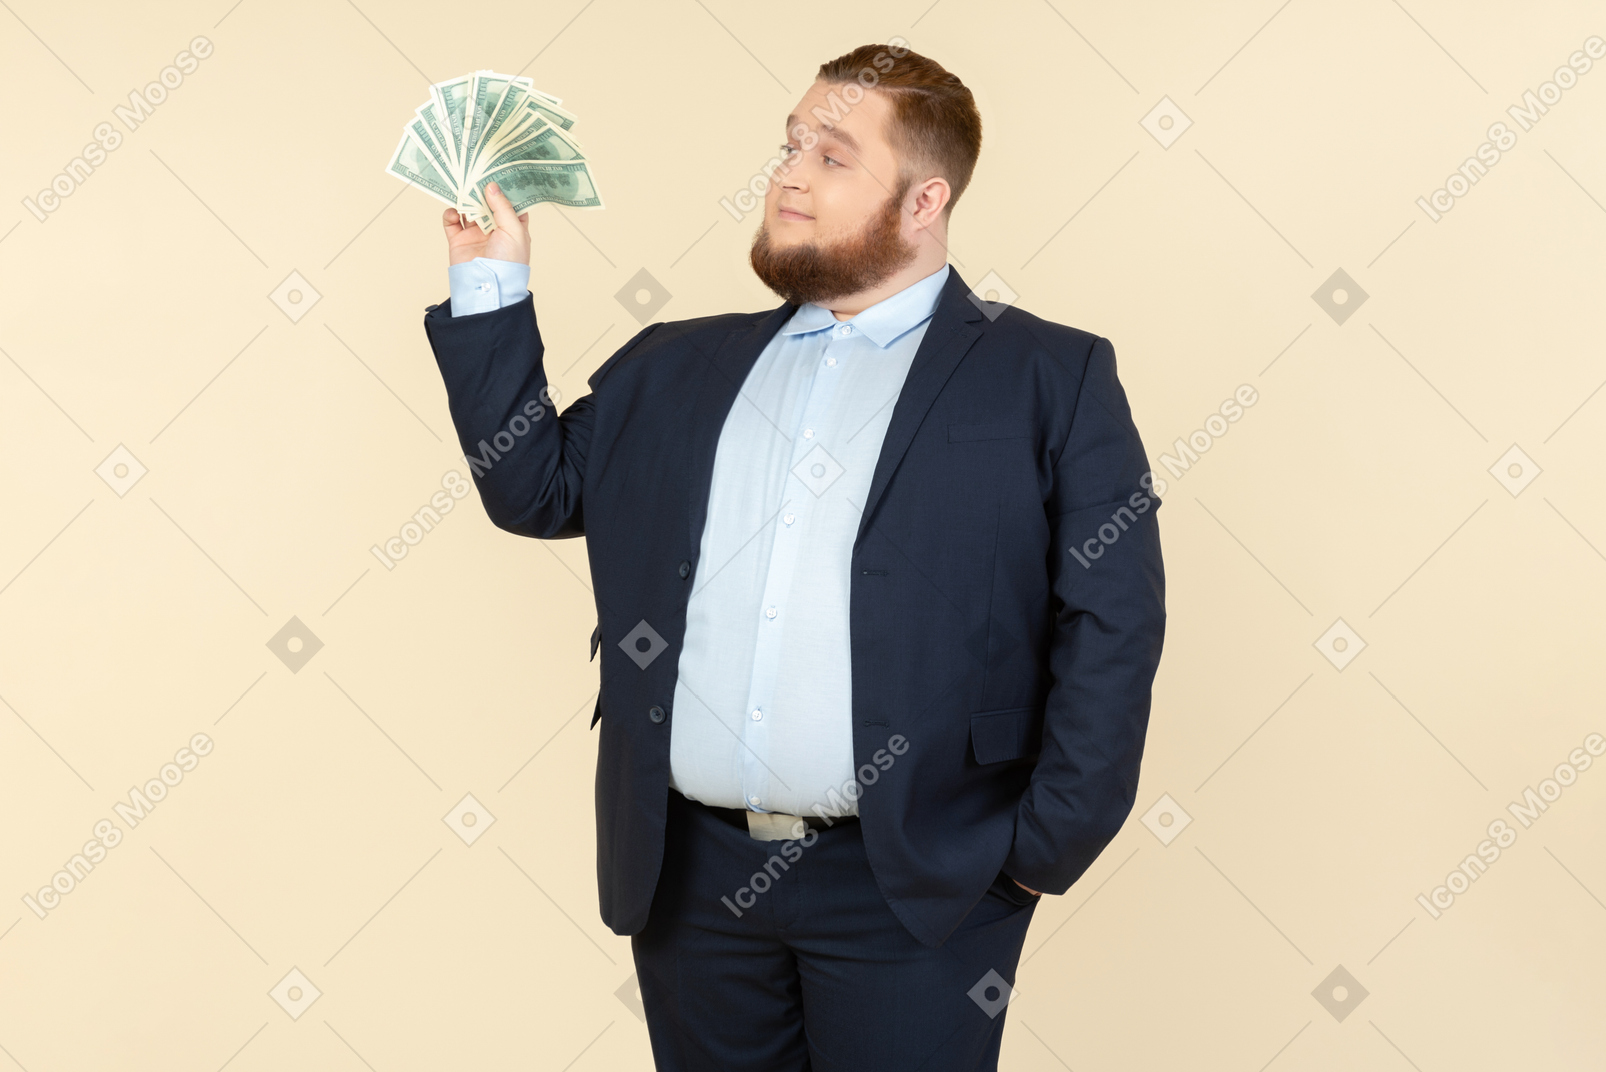 Un homme de taille plus dans un costume noir avec des billets d'un dollar dans les mains